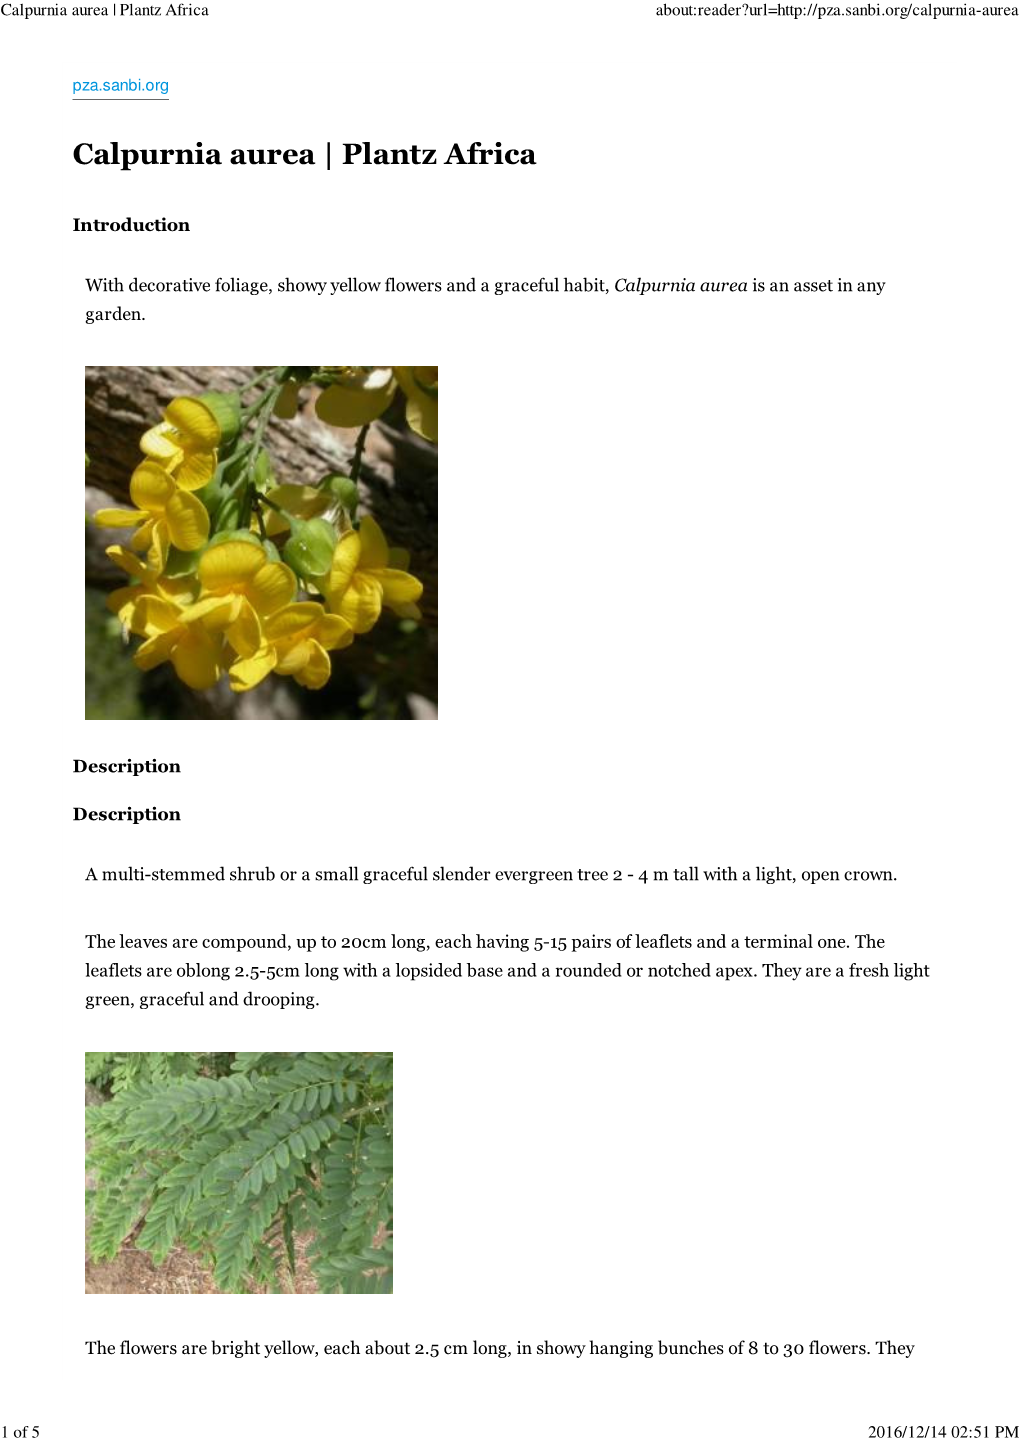 Calpurnia Aurea | Plantz Africa About:Reader?Url=